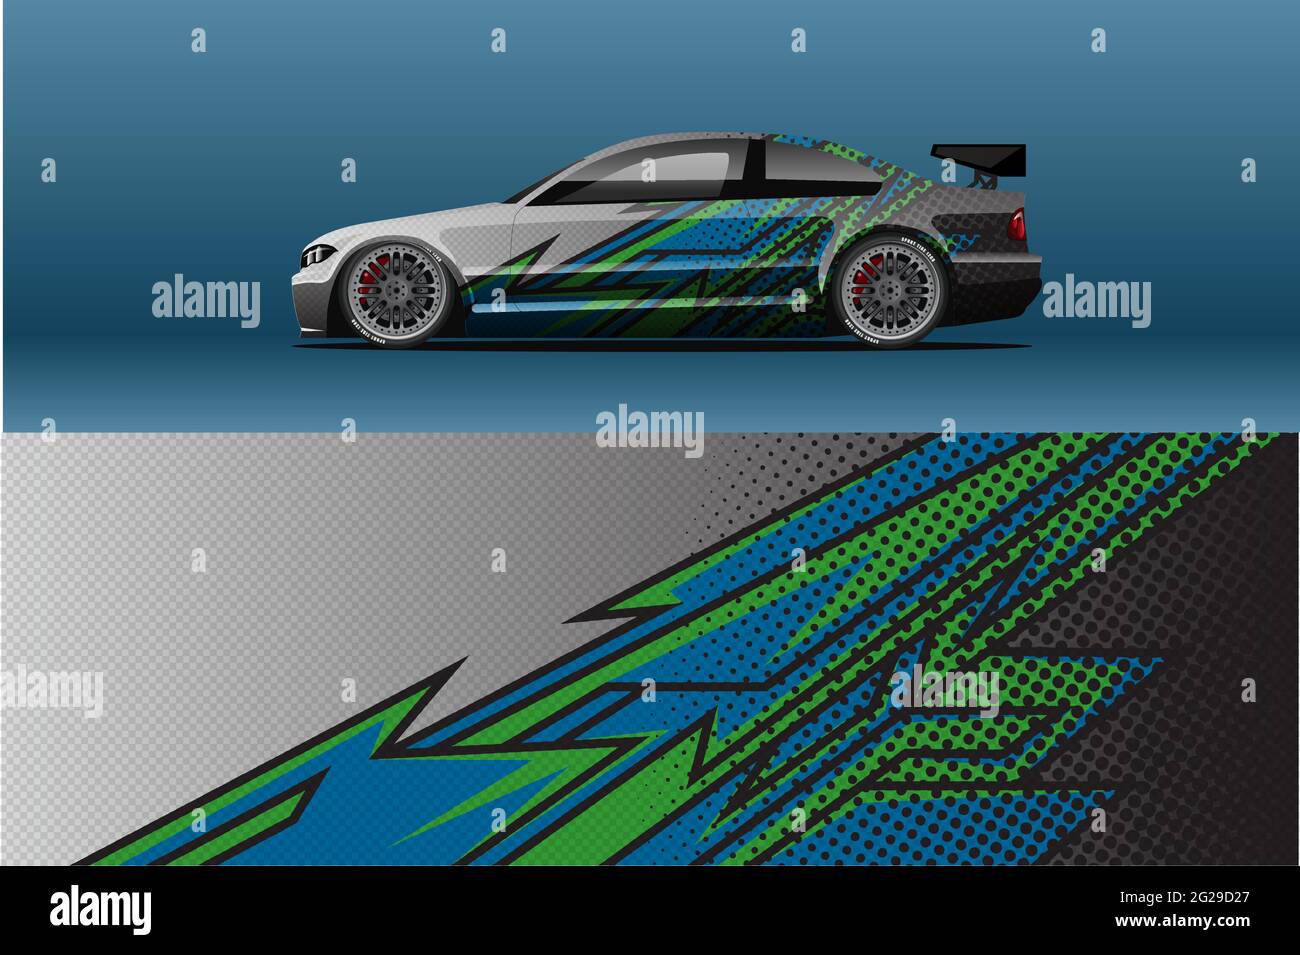 Resumen Race car wrap sticker diseño y fondo deportivo para uso diario livery de carreras o coche de vinilo pegatinas Ilustración del Vector